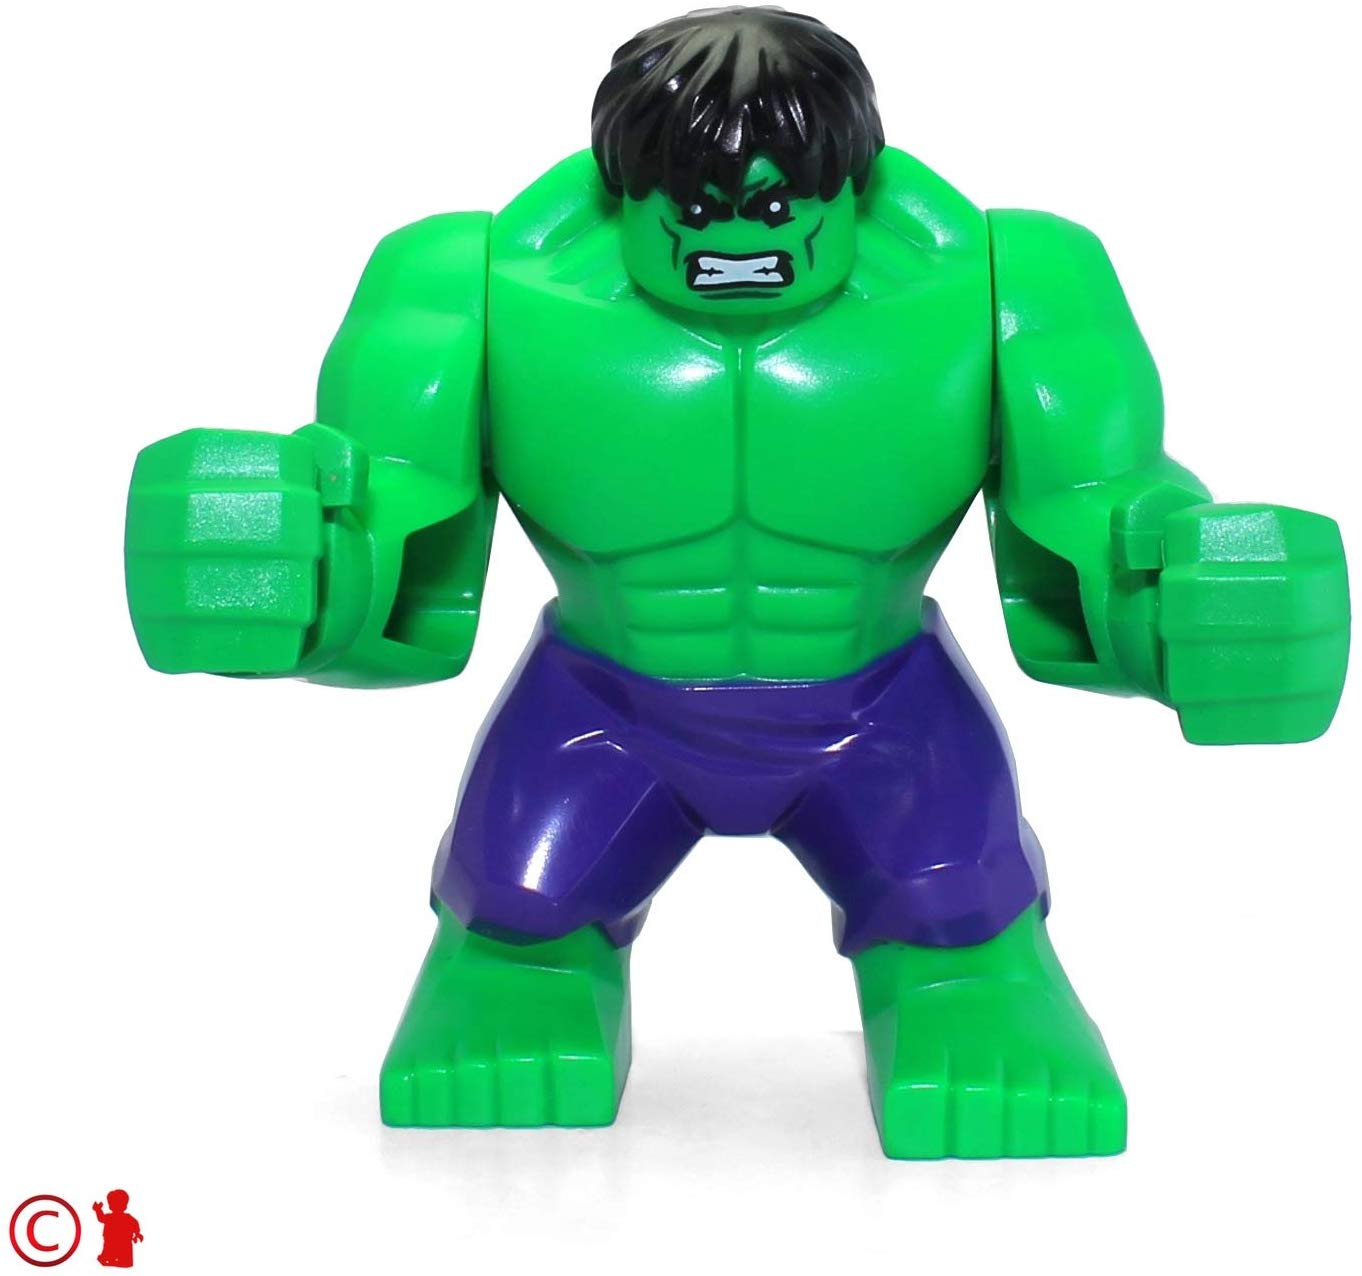 Marvel Lego Hulk Minifigure From Lego Set 76018